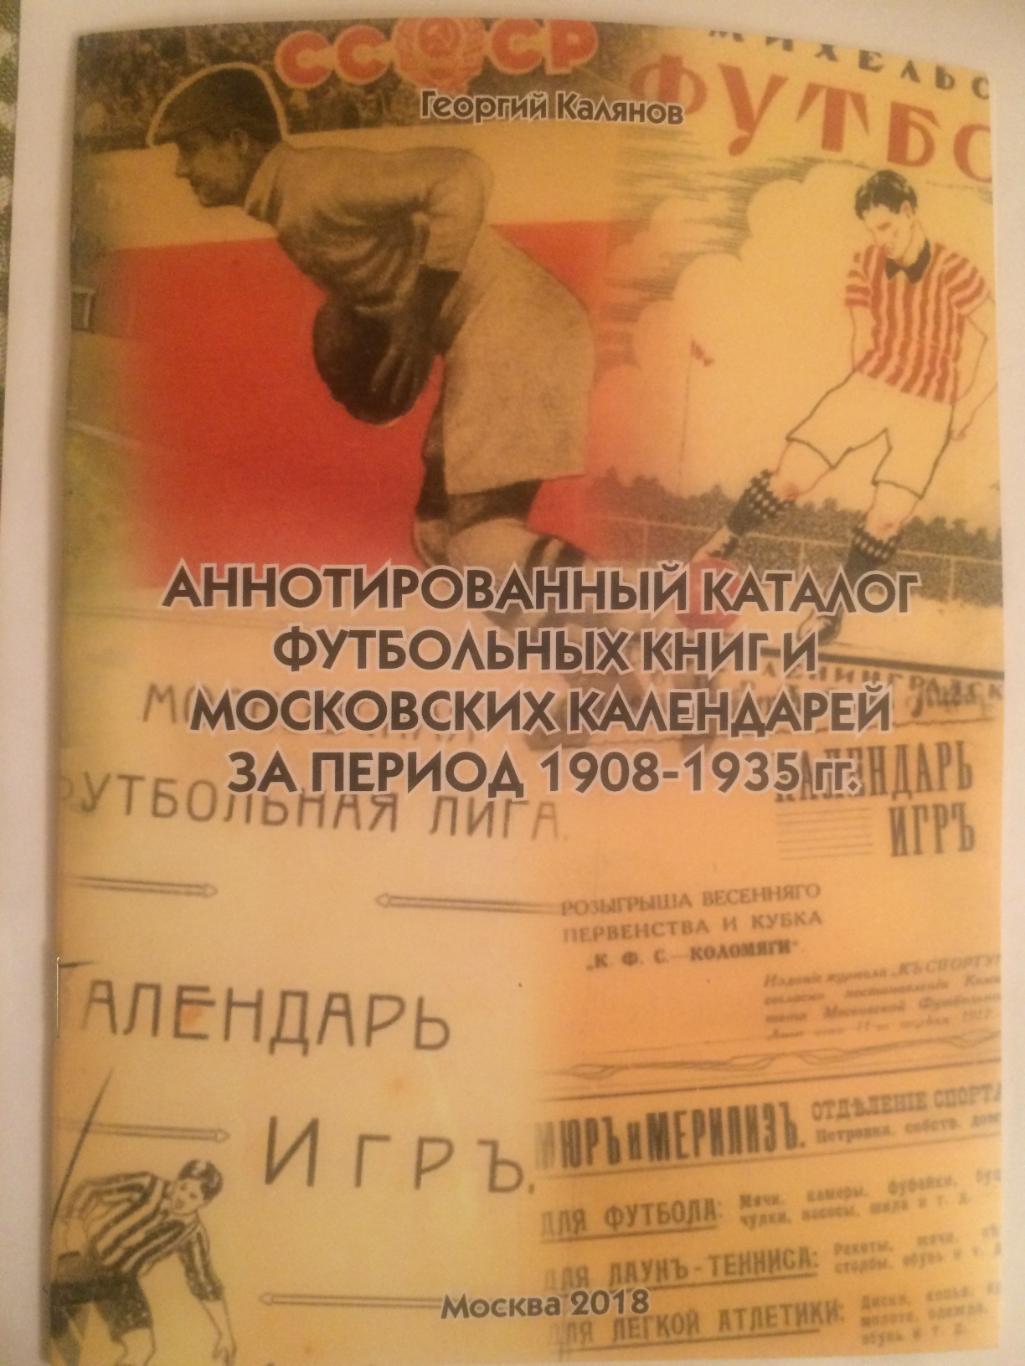 Каталог футбольных книг и календарей-справочников 1908-1935